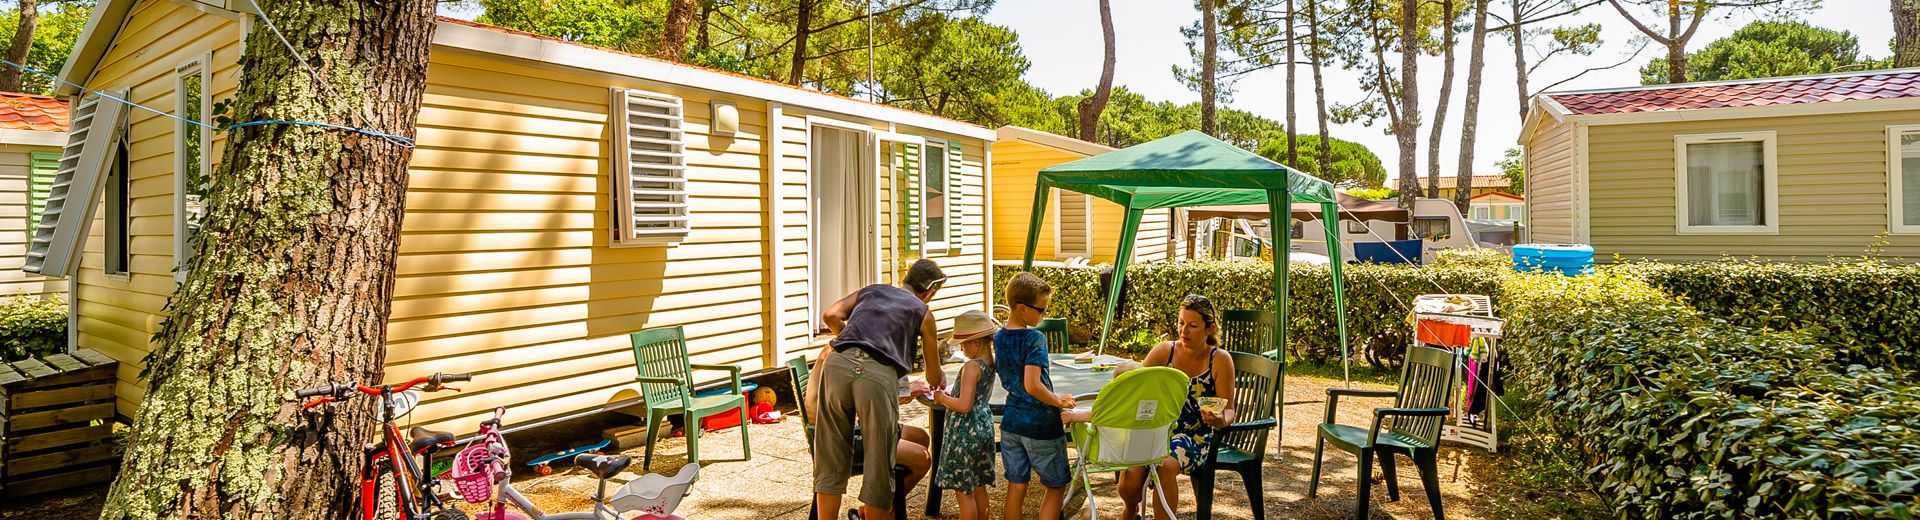 Campsite France Landes, hebergements mobile home landes